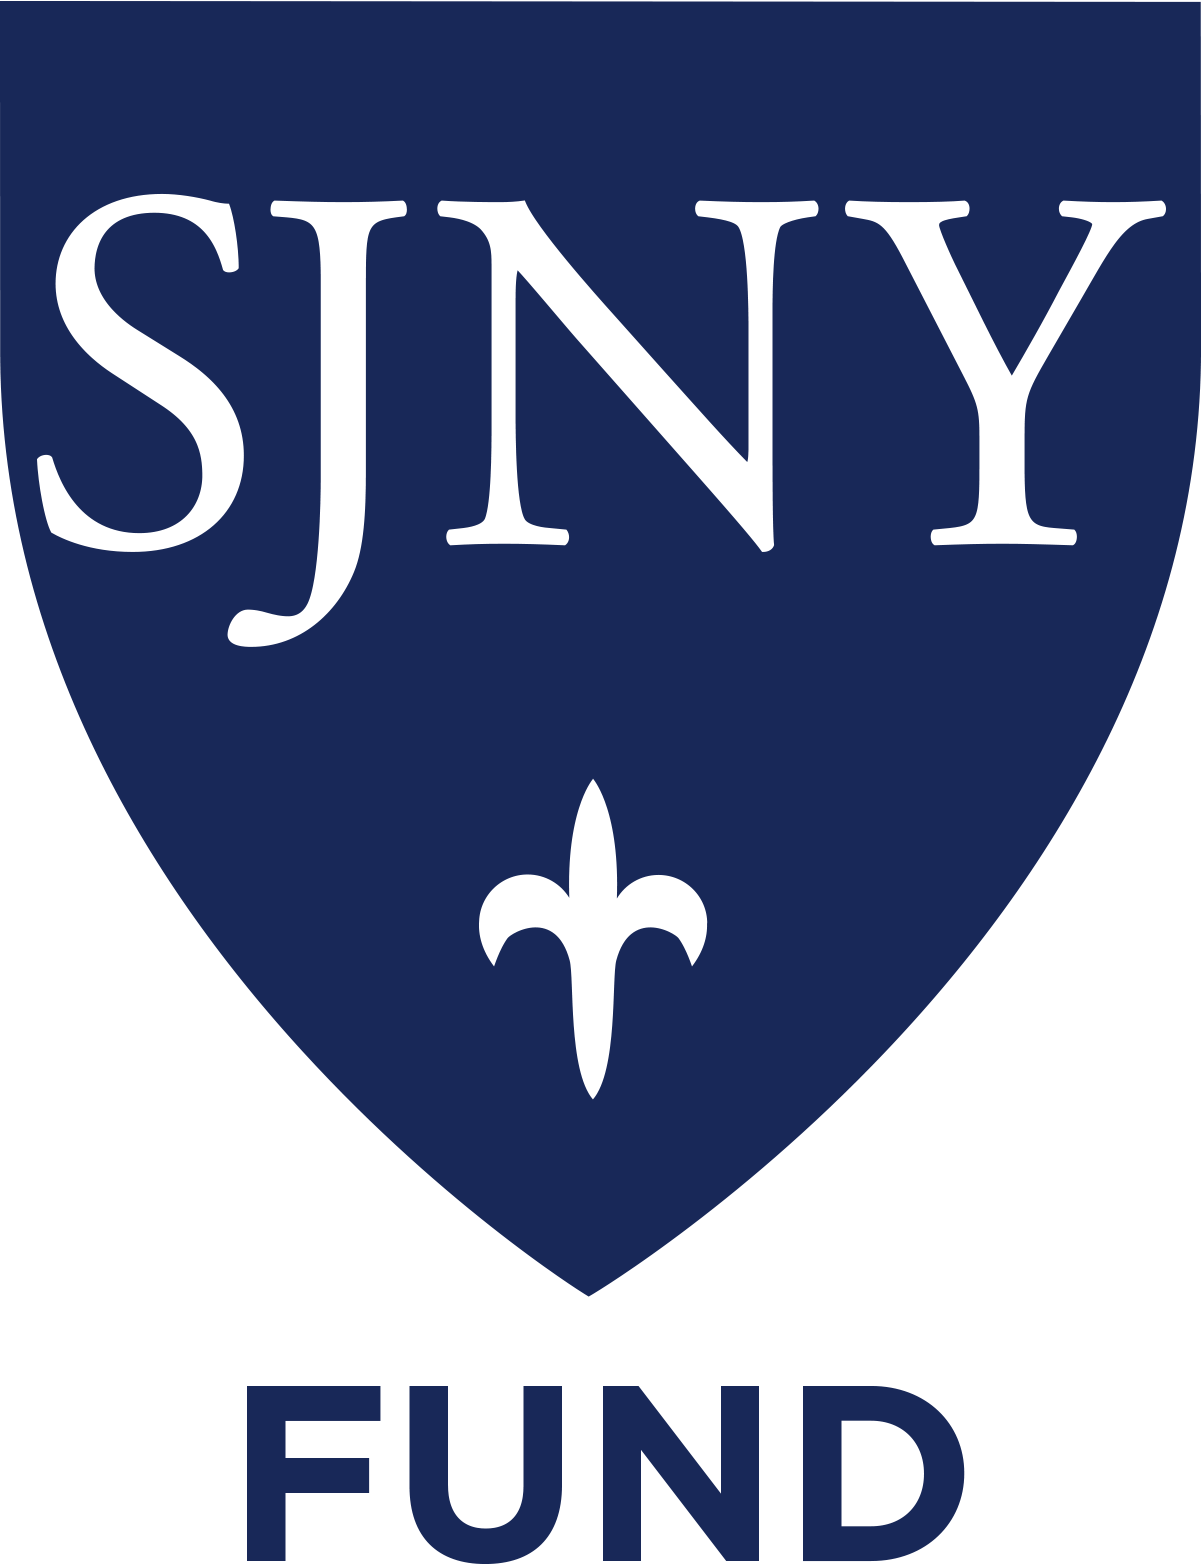 SJNY Fund badge logo